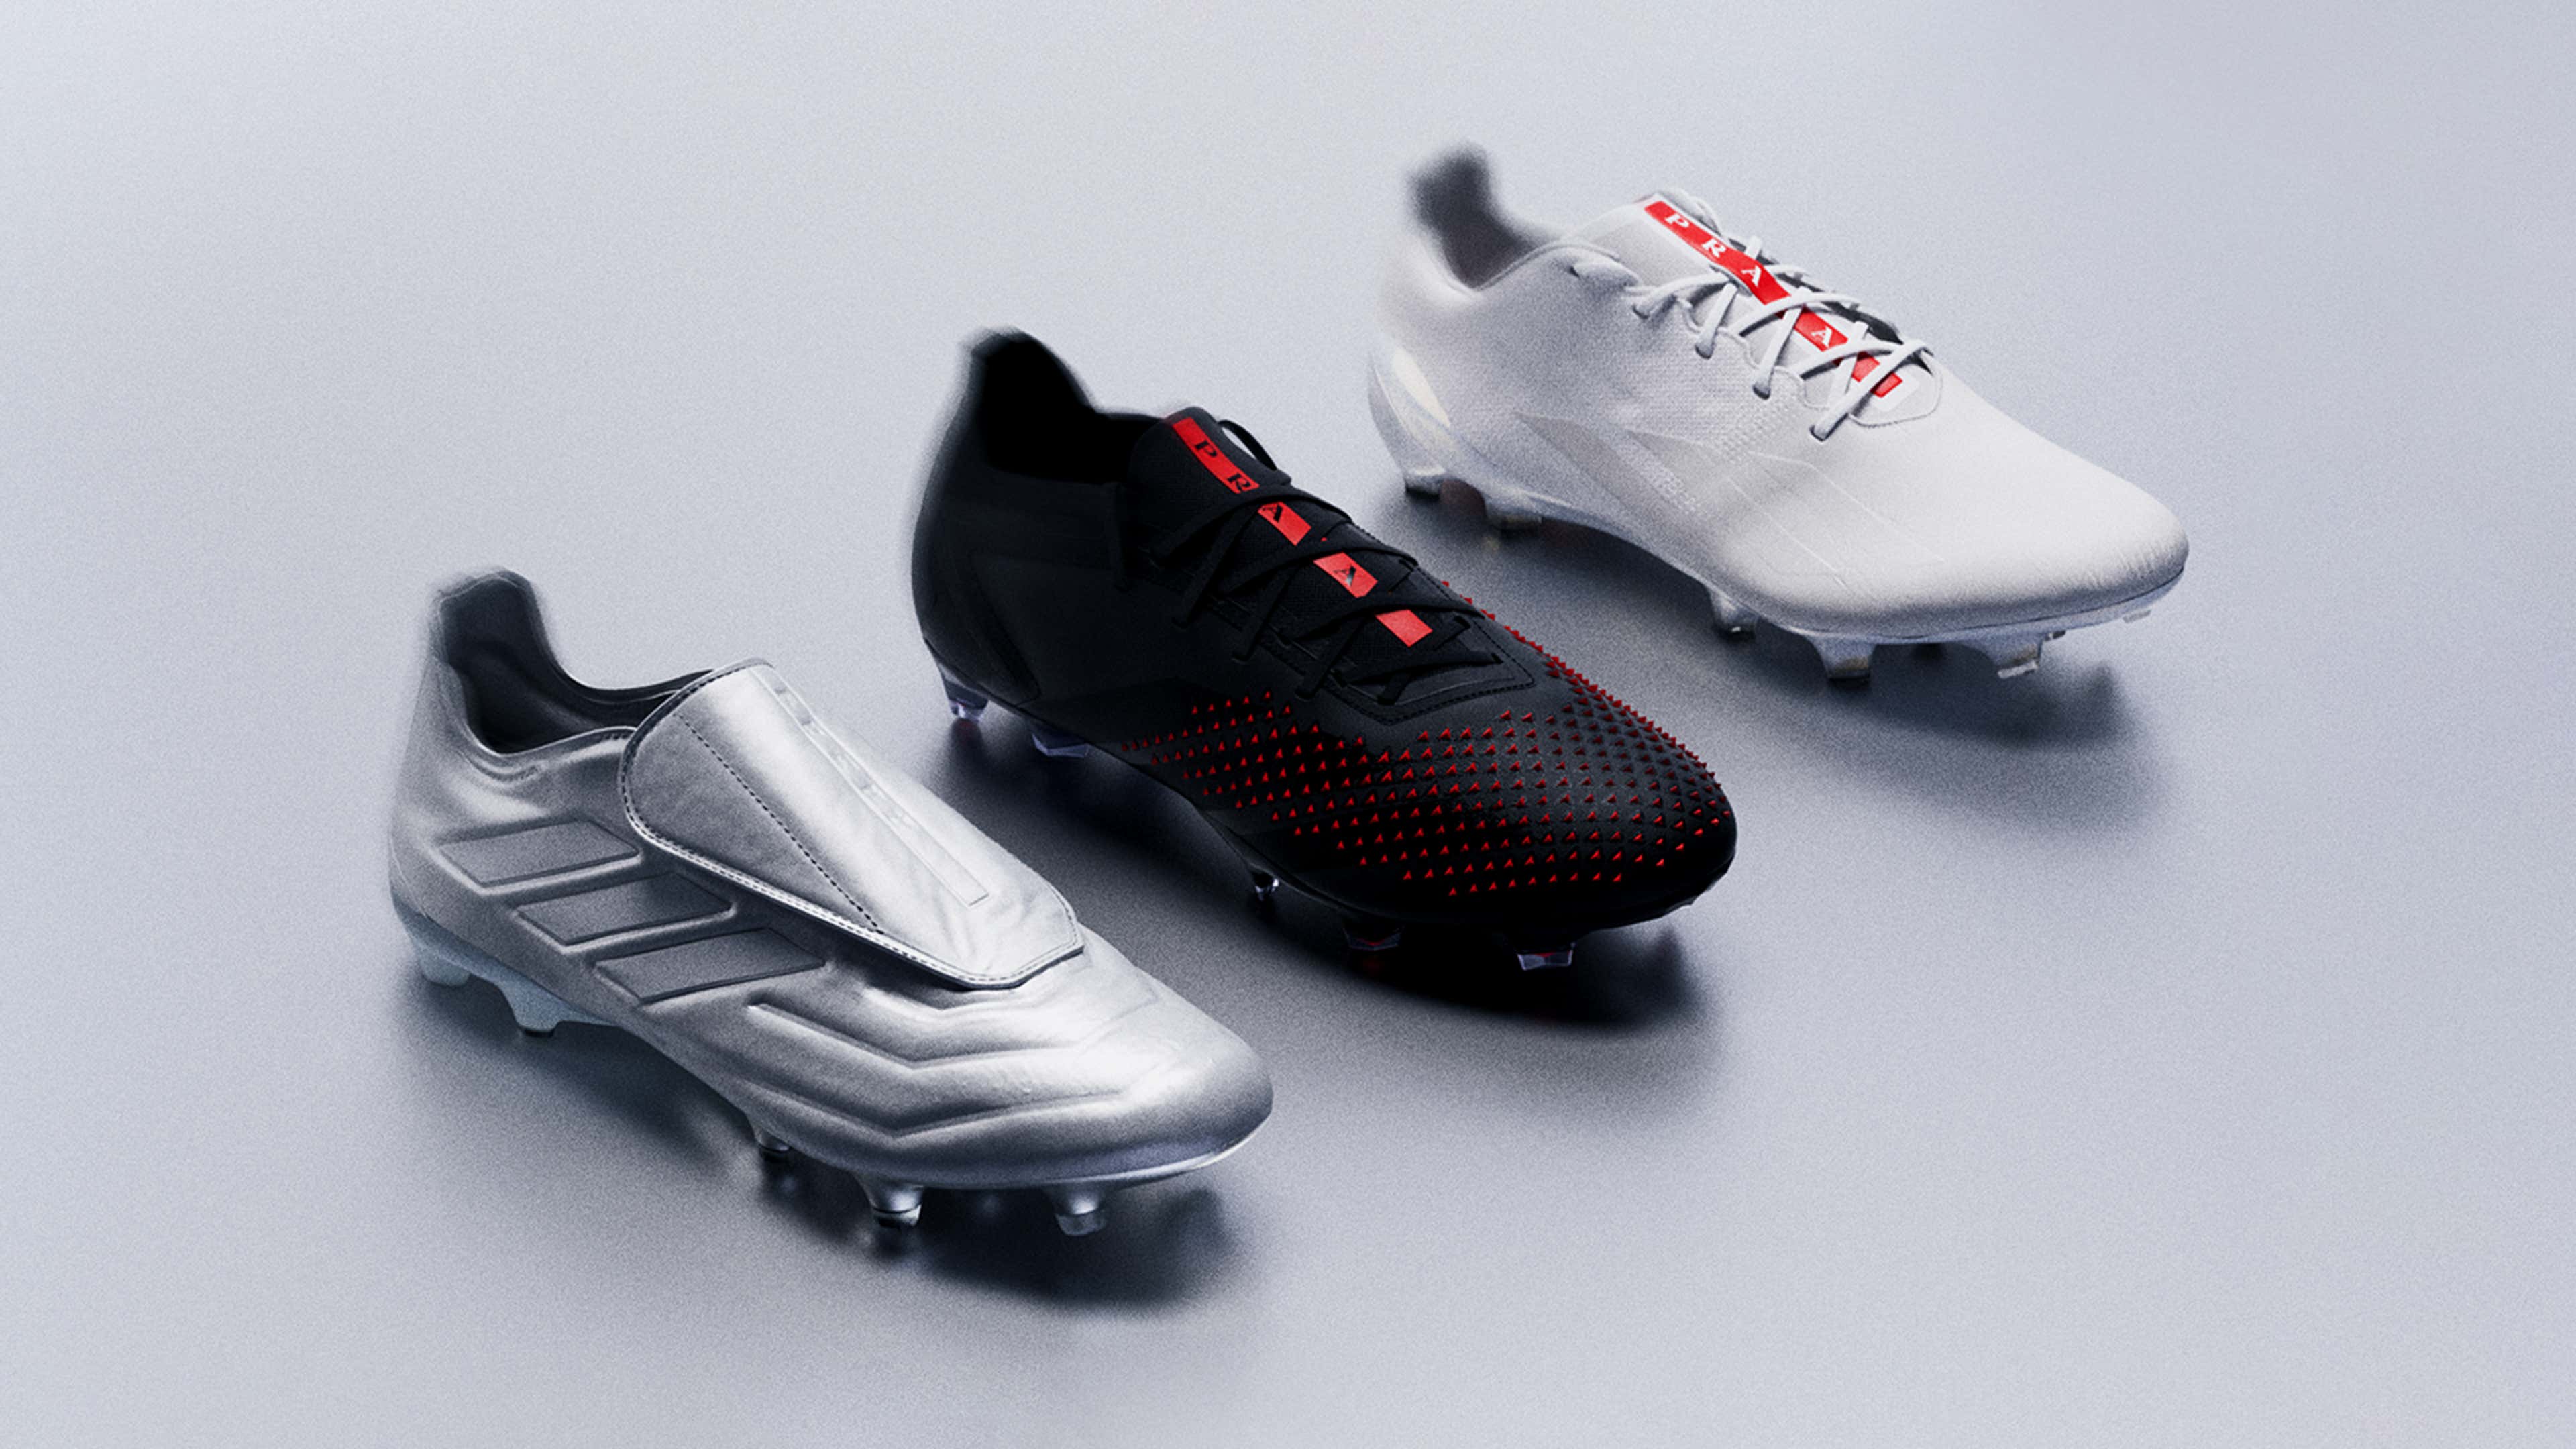 onvergeeflijk geluk historisch adidas and Prada drop limited-edition football boot collection | Goal.com US